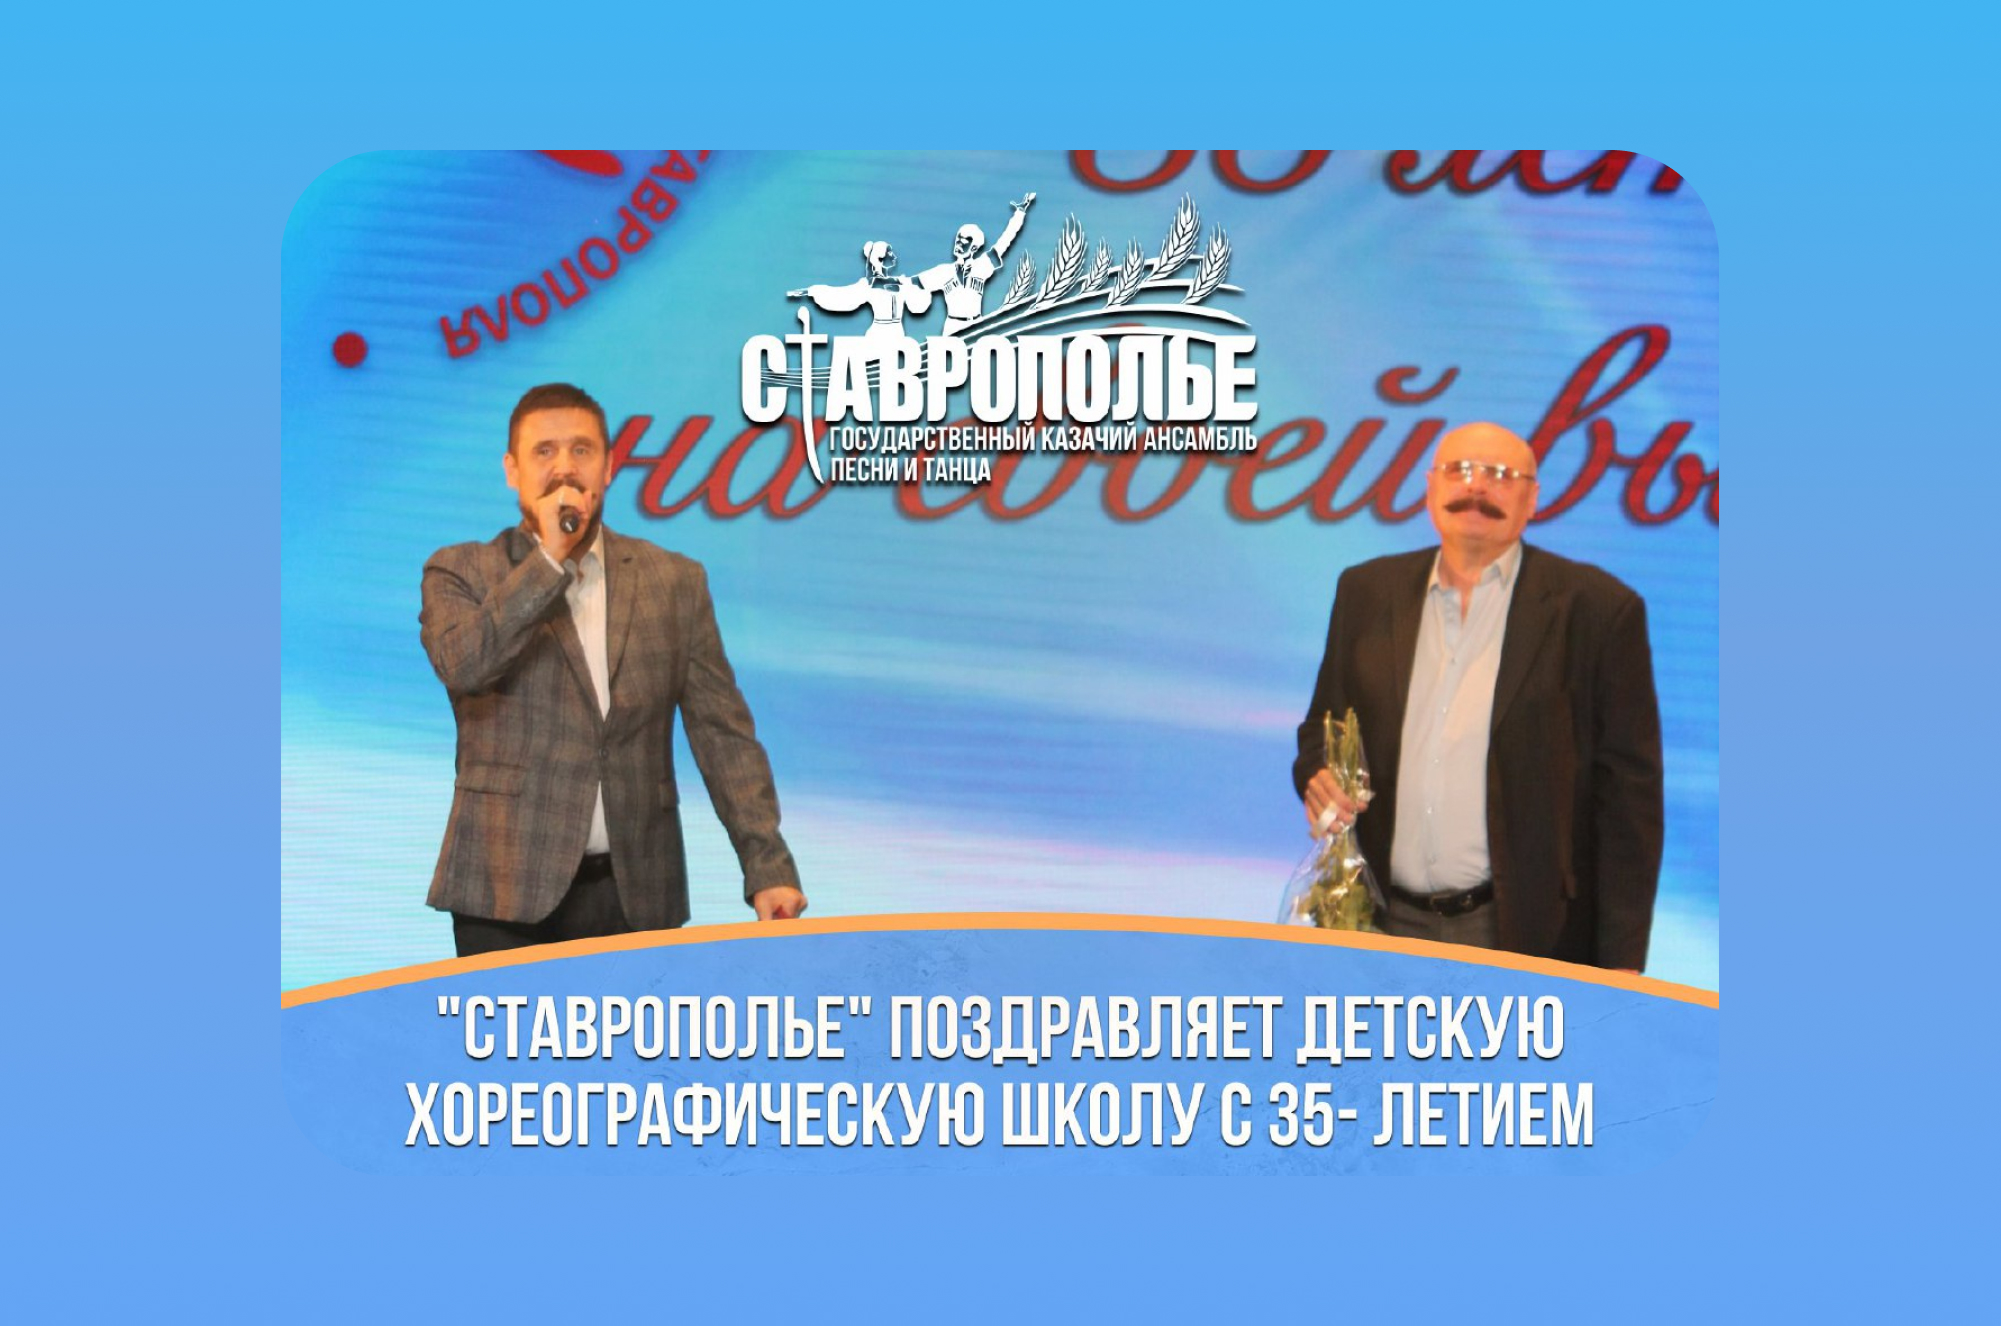 Ансамбль «Ставрополье» поздравил Детскую хореографическую школу с Юбилеем!